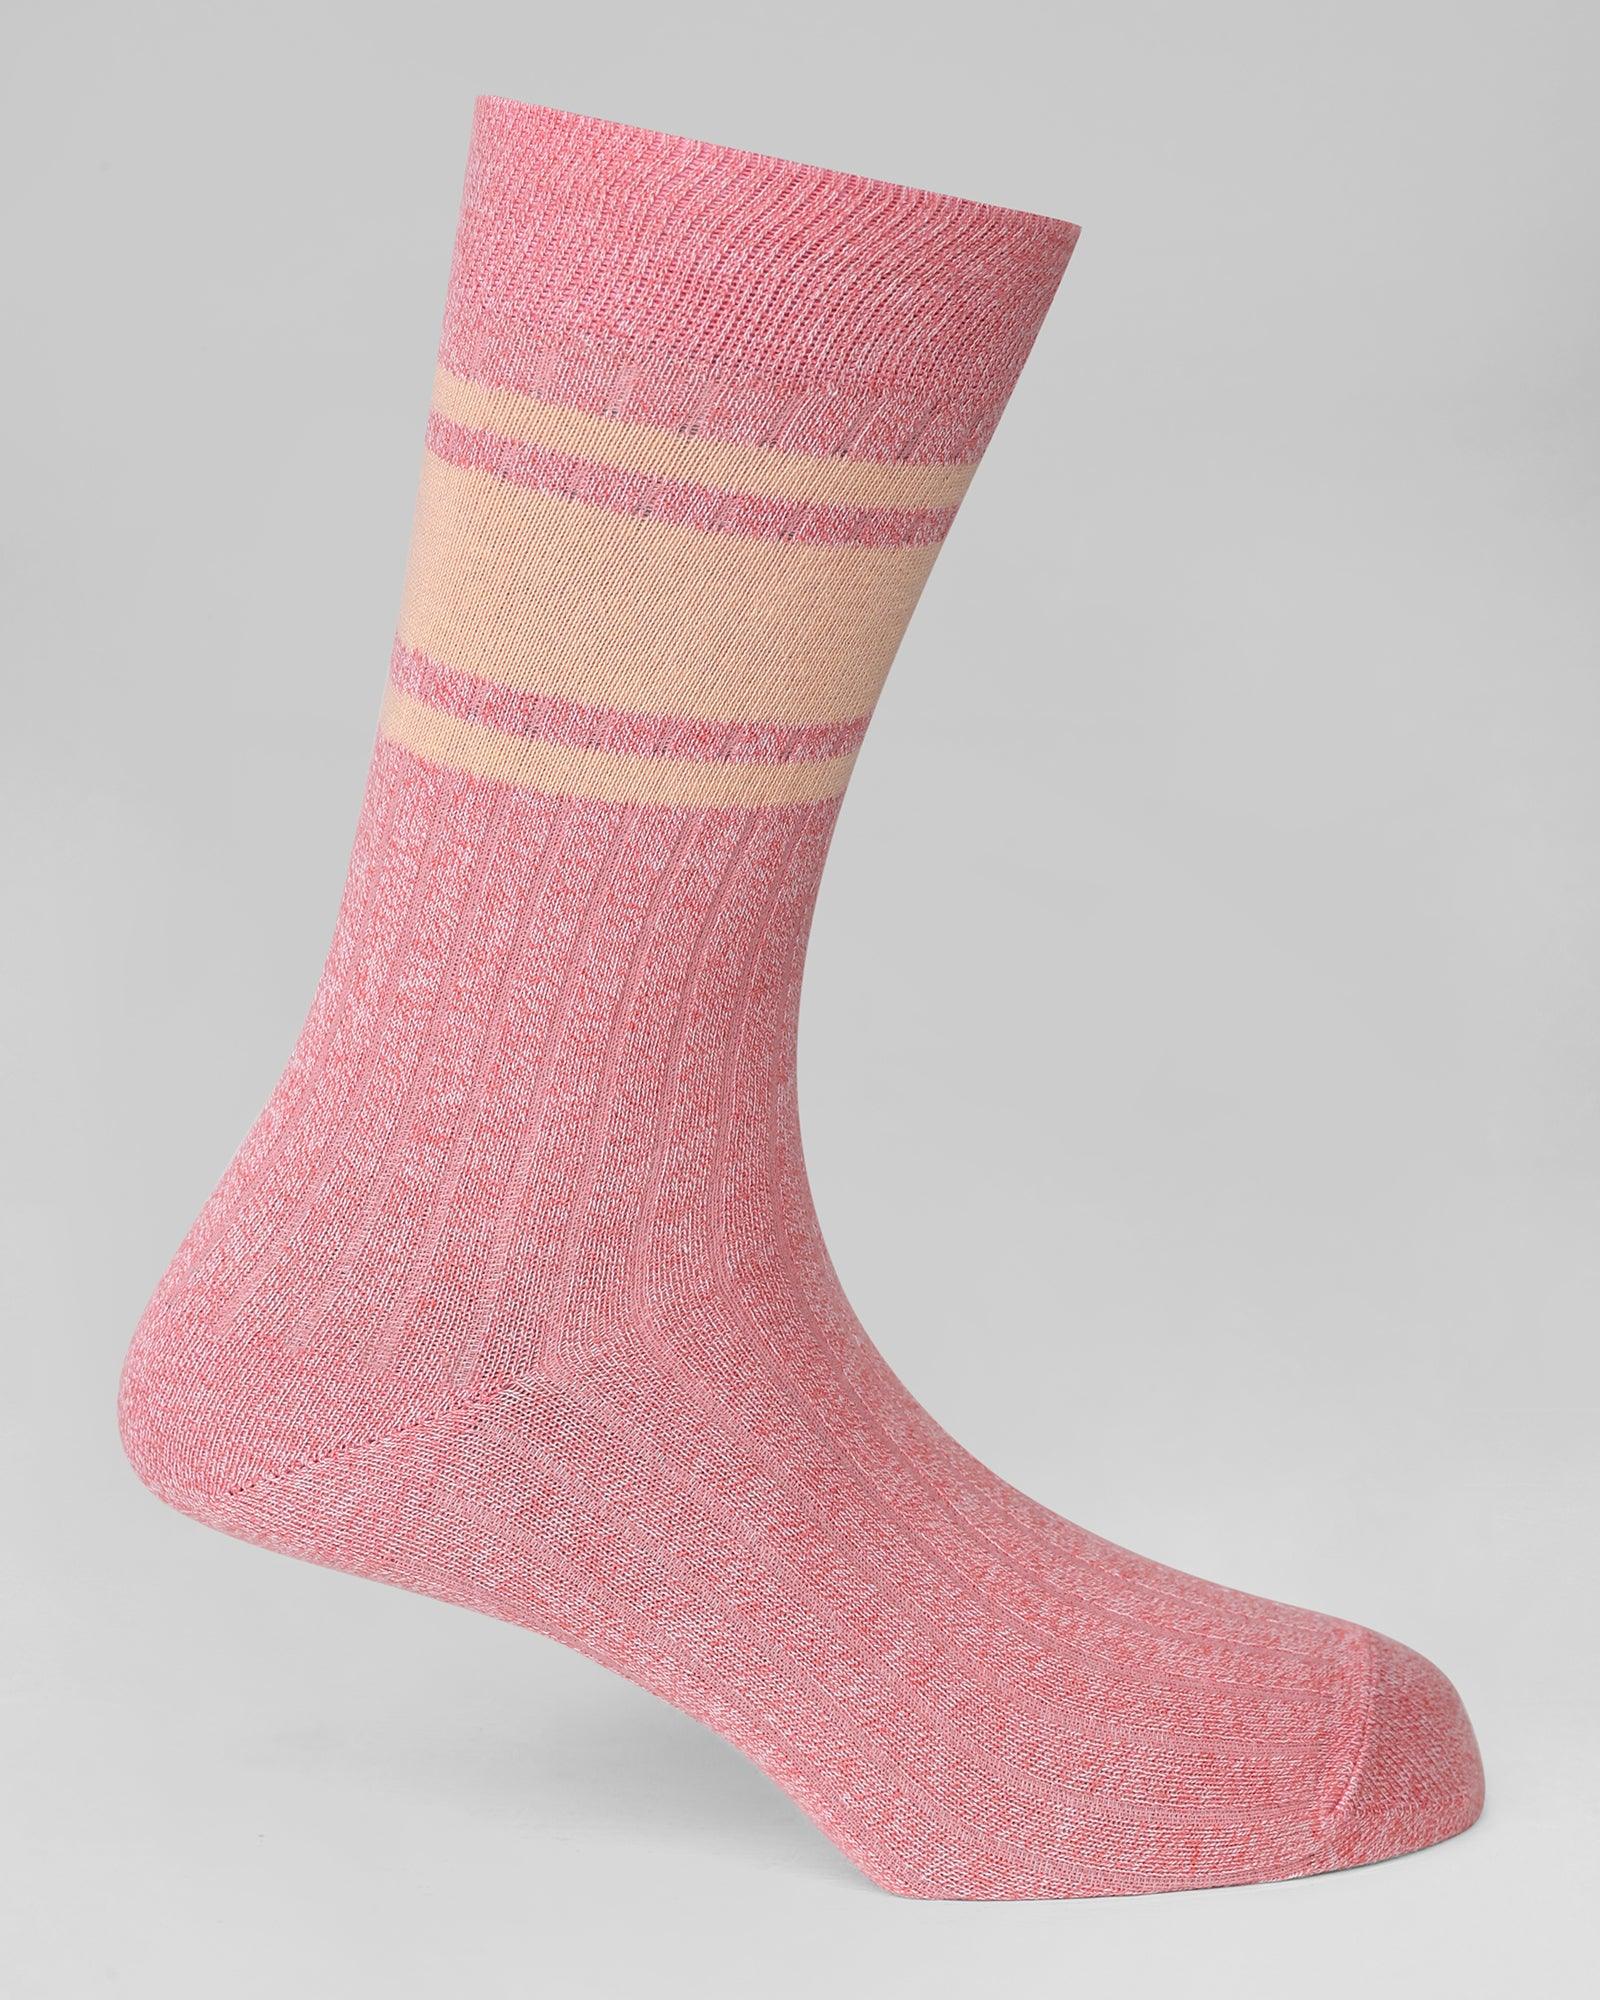 http://blackberrys.com/cdn/shop/files/textured-regular-fit-socks-in-blossom-pink-odina-blackberrys-clothing-1.jpg?v=1685948567